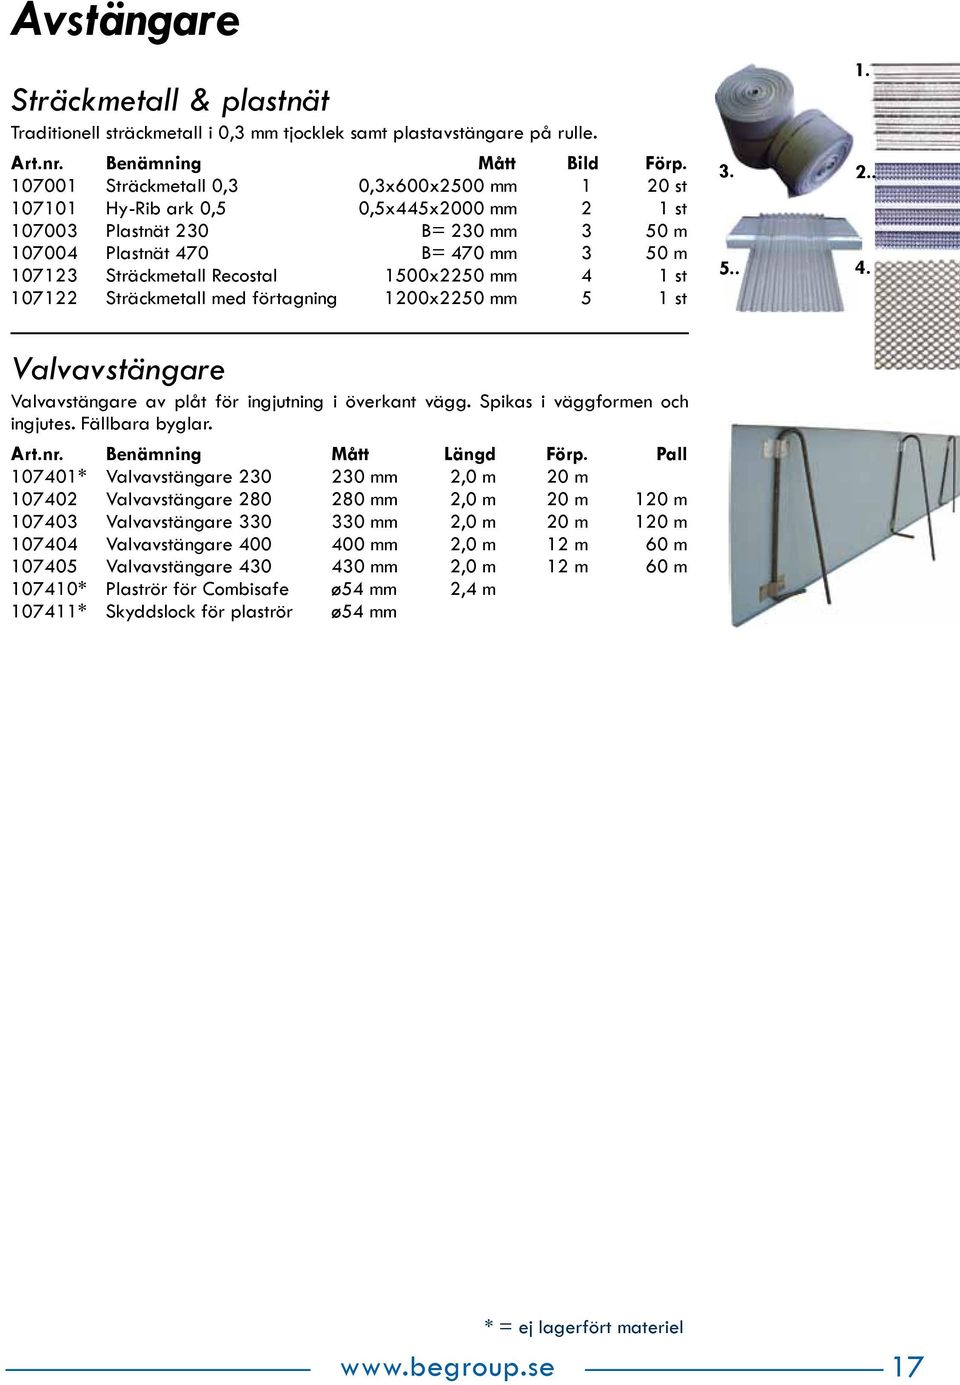 1500x2250 mm 4 1 st 107122 Sträckmetall med förtagning 1200x2250 mm 5 1 st 5.. 2.. 4. Valvavstängare Valvavstängare av plåt för ingjutning i överkant vägg. Spikas i väggformen och ingjutes.